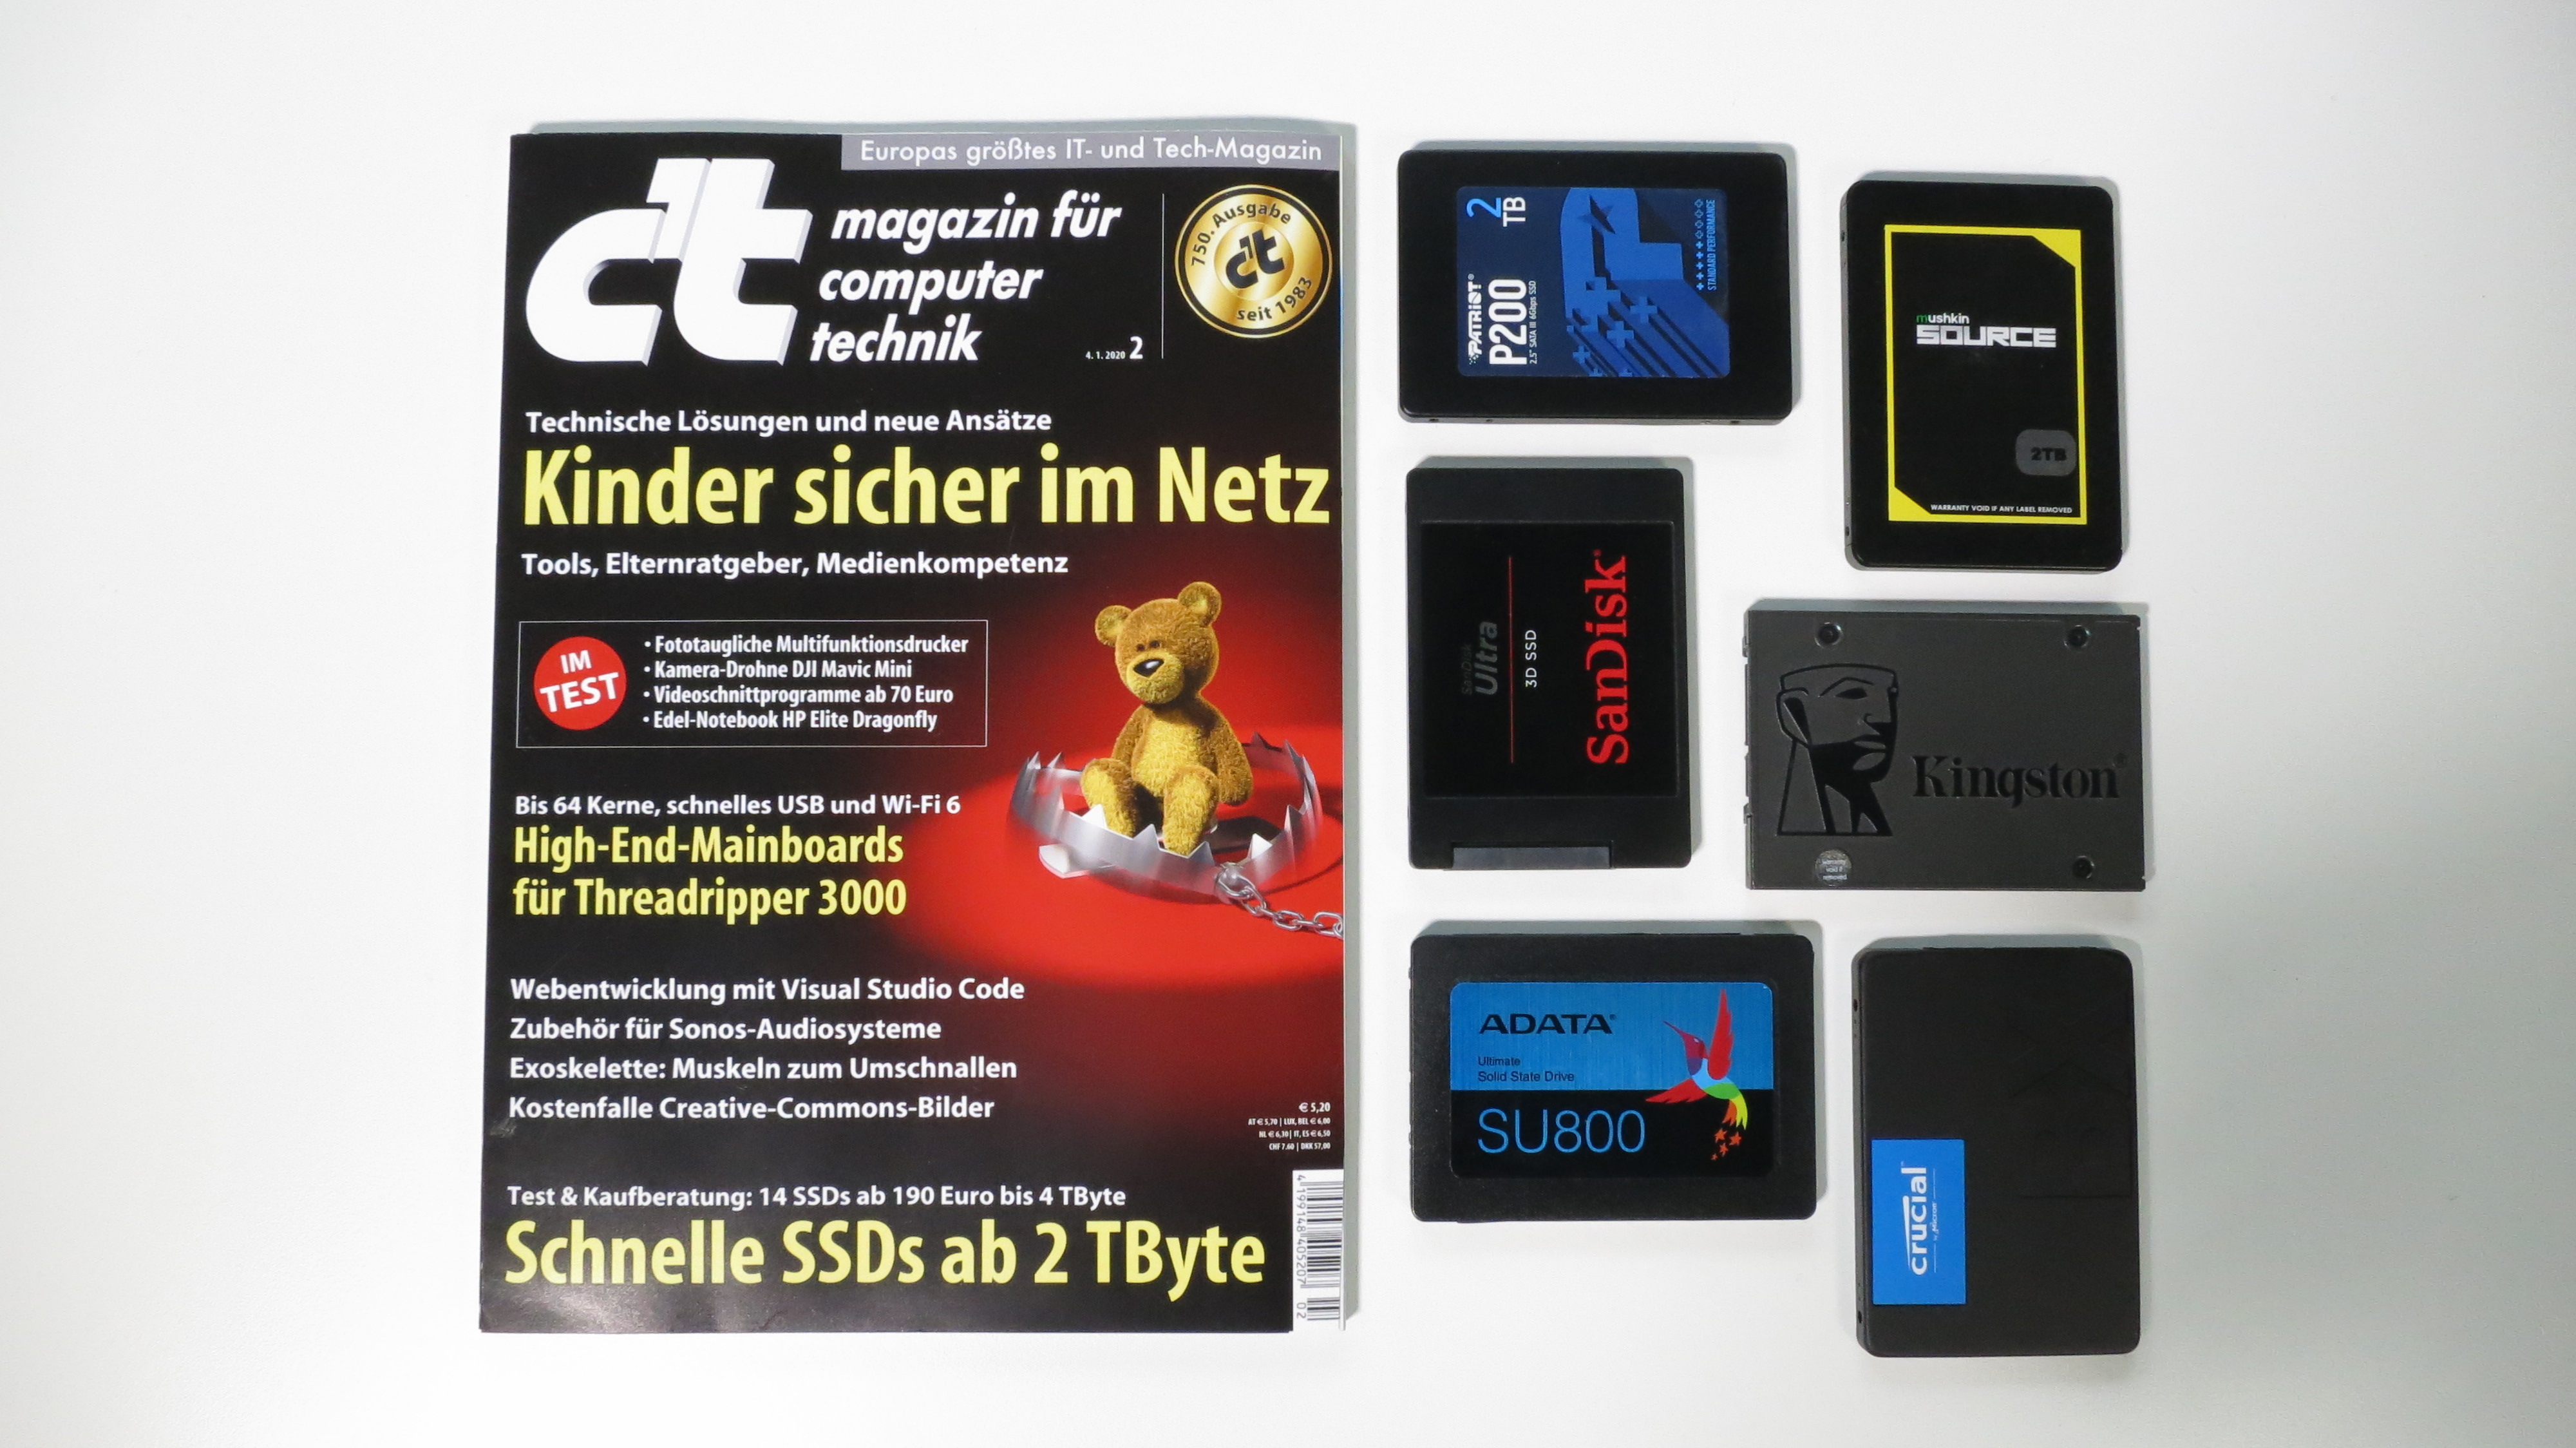 c't 2/2020 - Der Blick ins Heft mit SSDs im Test, 750. c't-Ausgabe, Kinder  sicher im Netz | c't Magazin